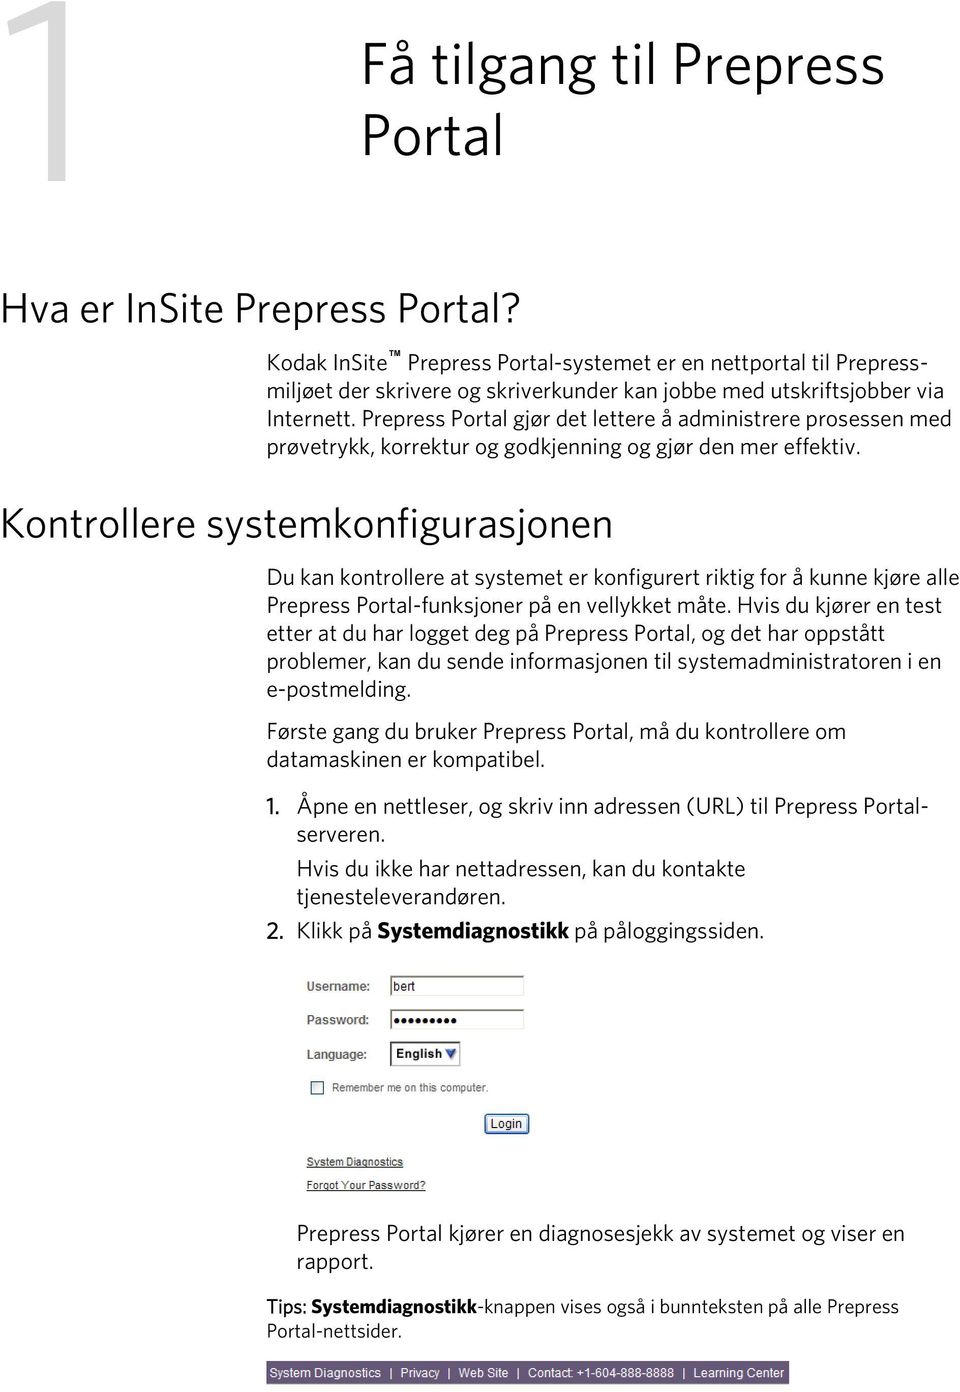 Prepress Portal gjør det lettere å administrere prosessen med prøvetrykk, korrektur og godkjenning og gjør den mer effektiv.